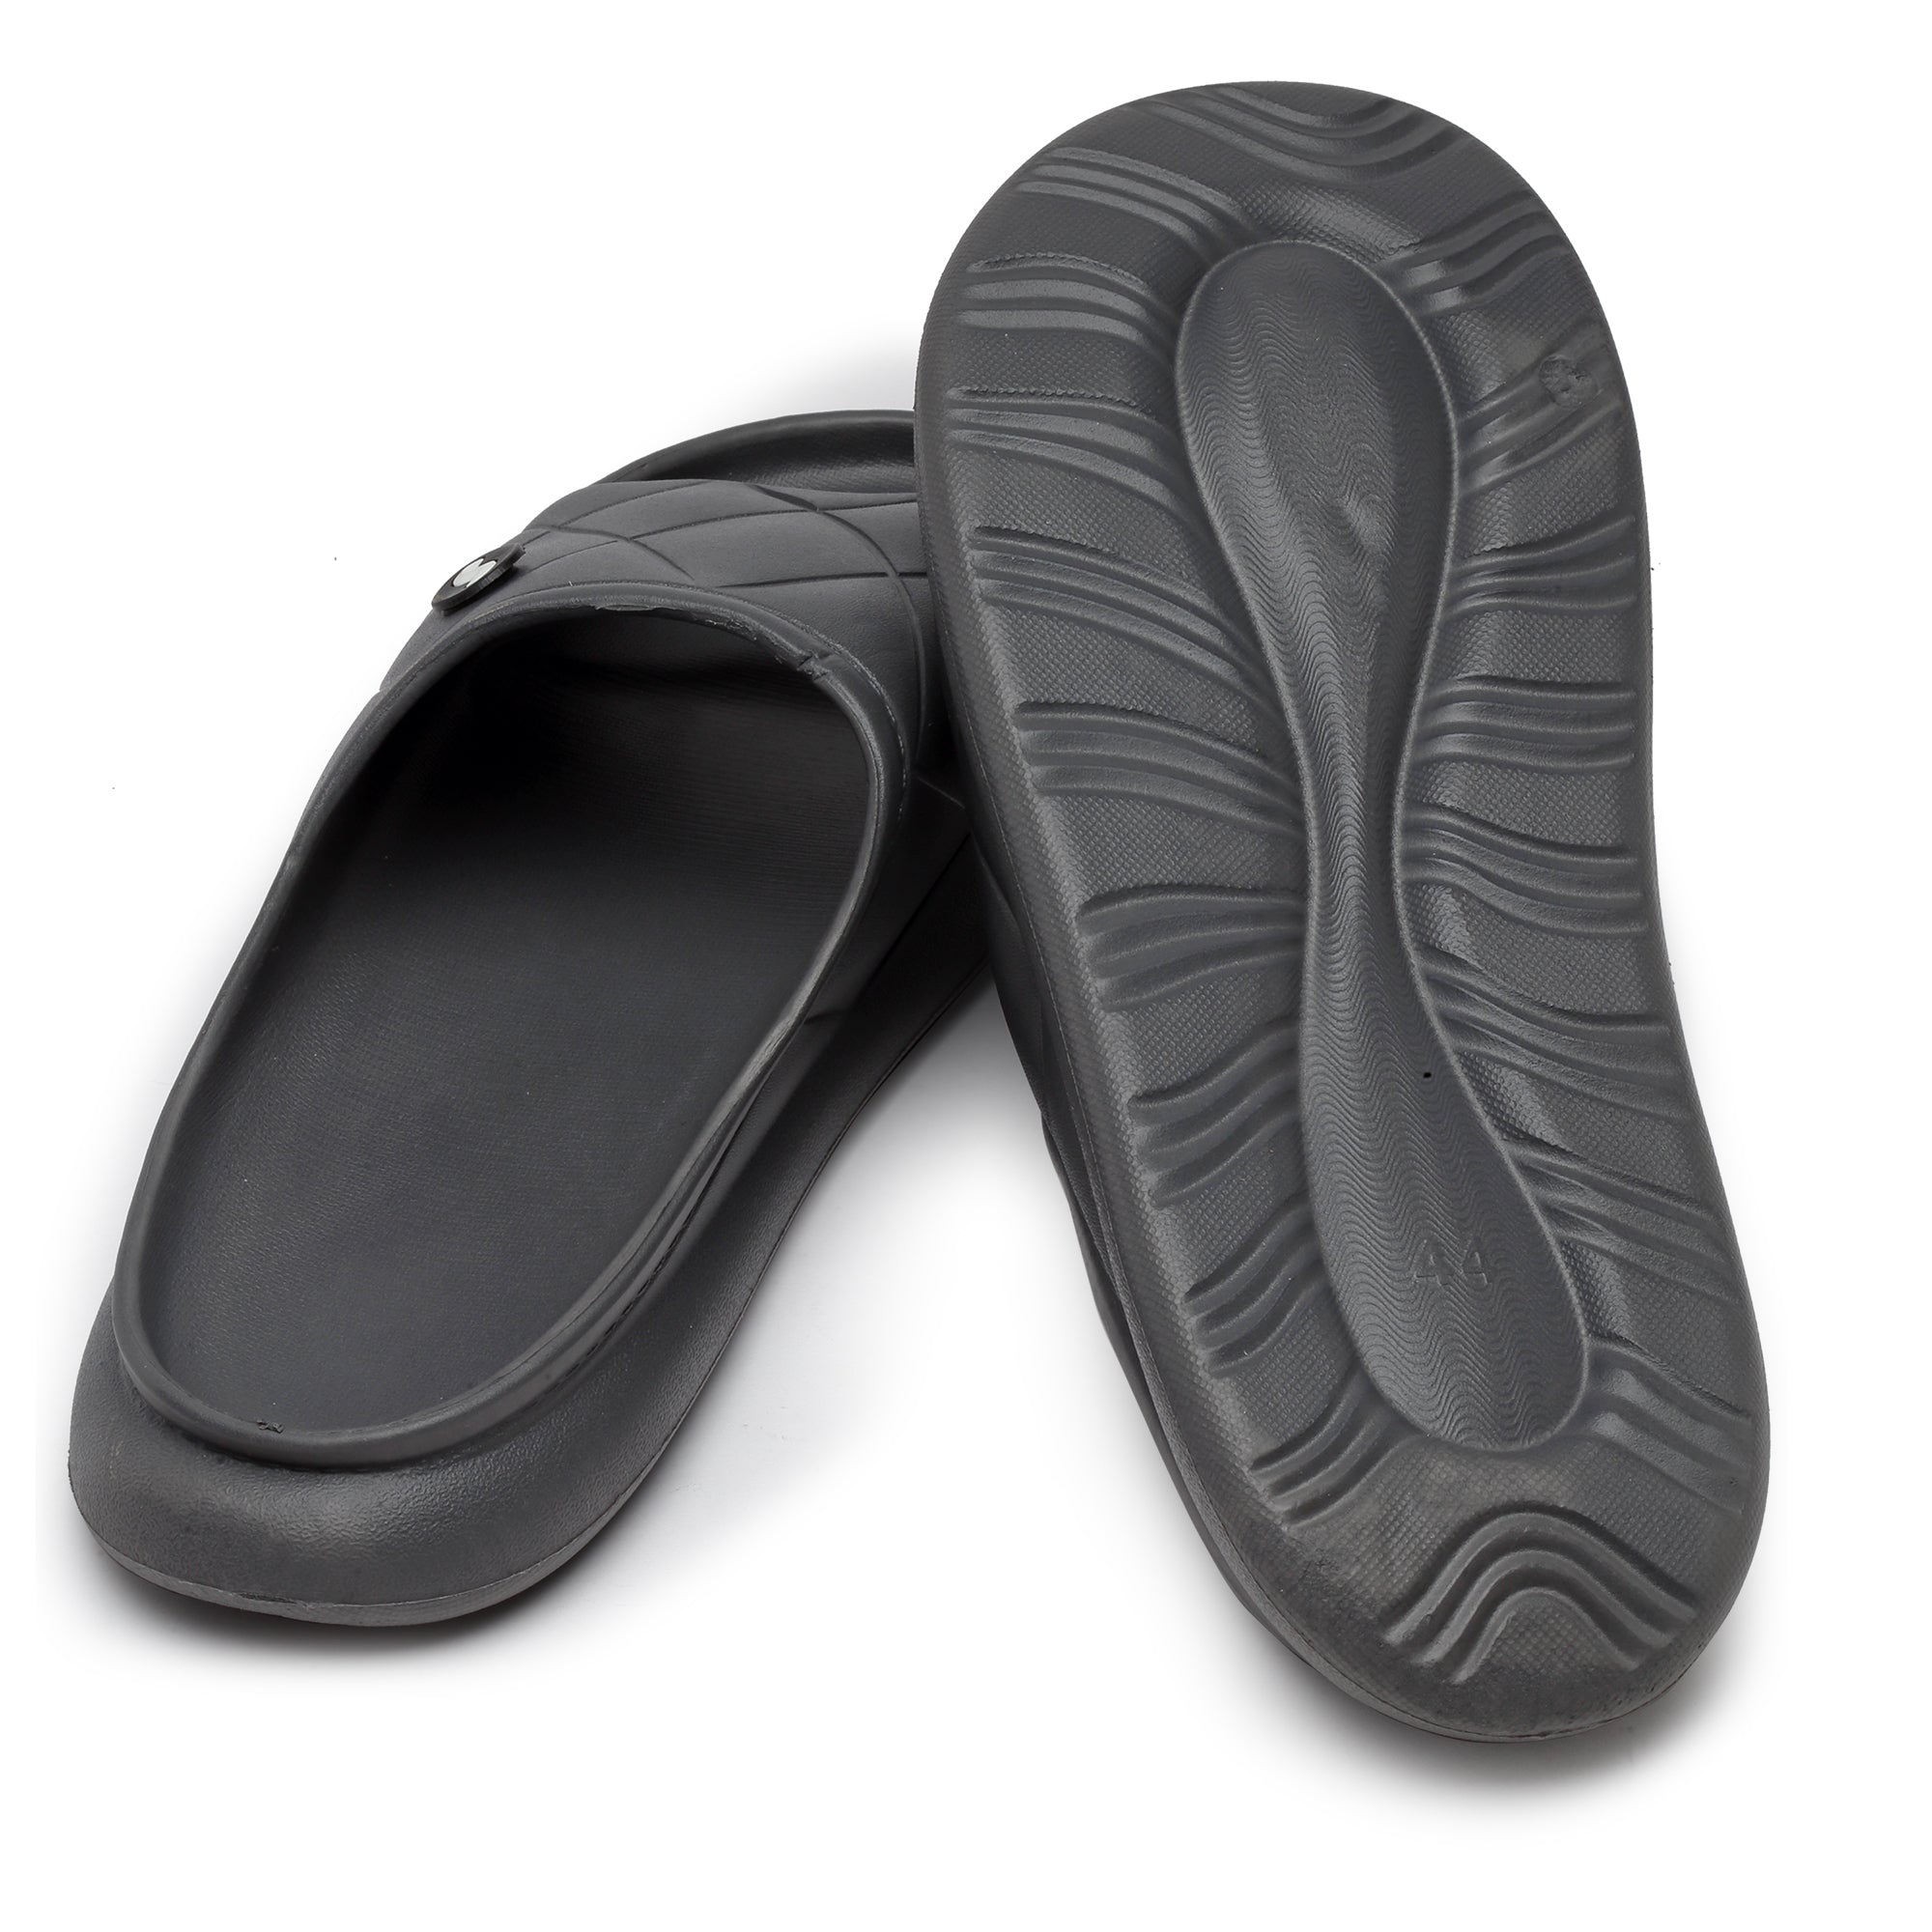 GARG SHOOZ - Flip flops Slidders Full stock #supreme #slidders